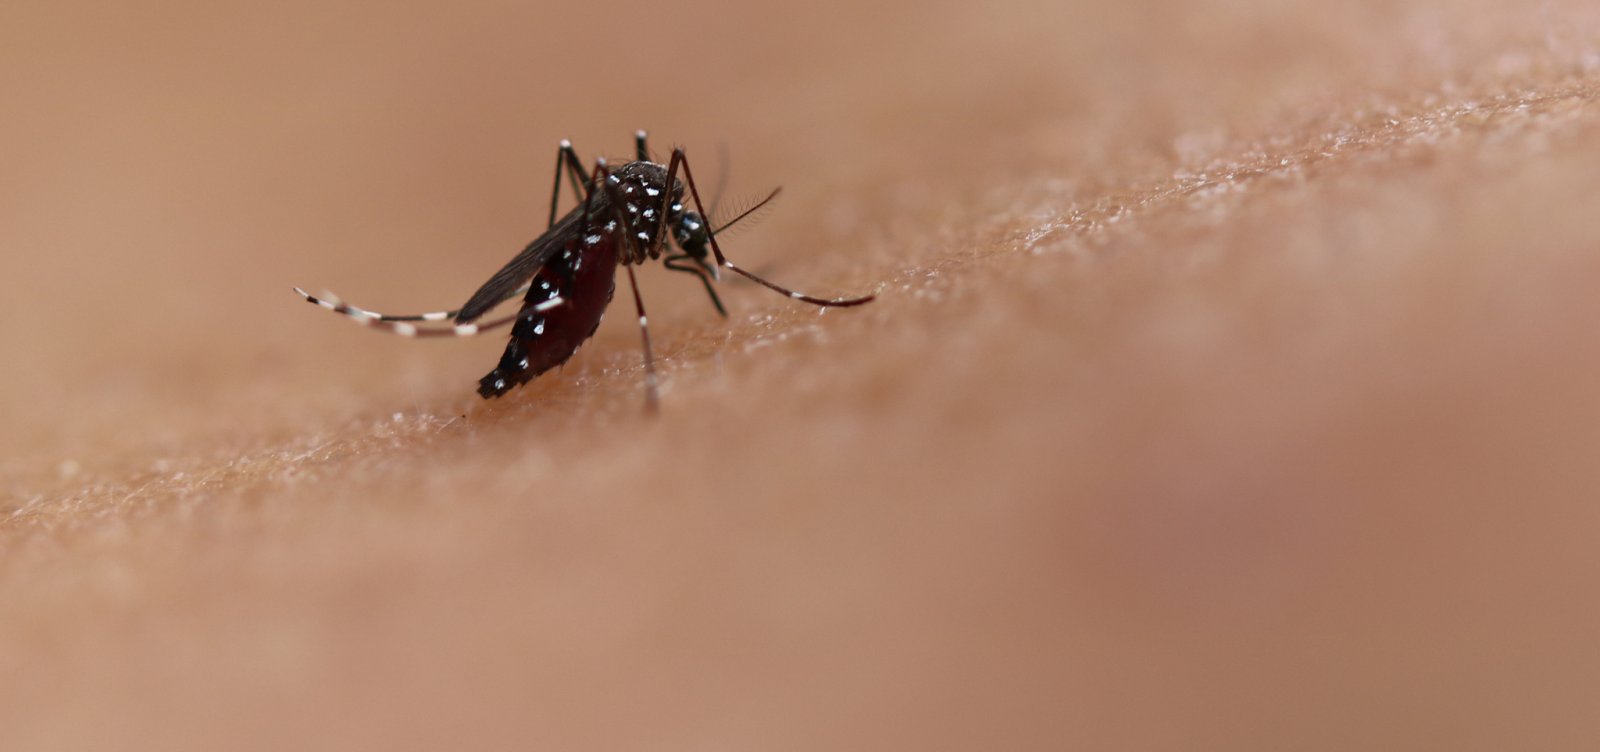 Brasil contabiliza mais 970 mil casos de dengue este ano, segundo Ministério da Saúde